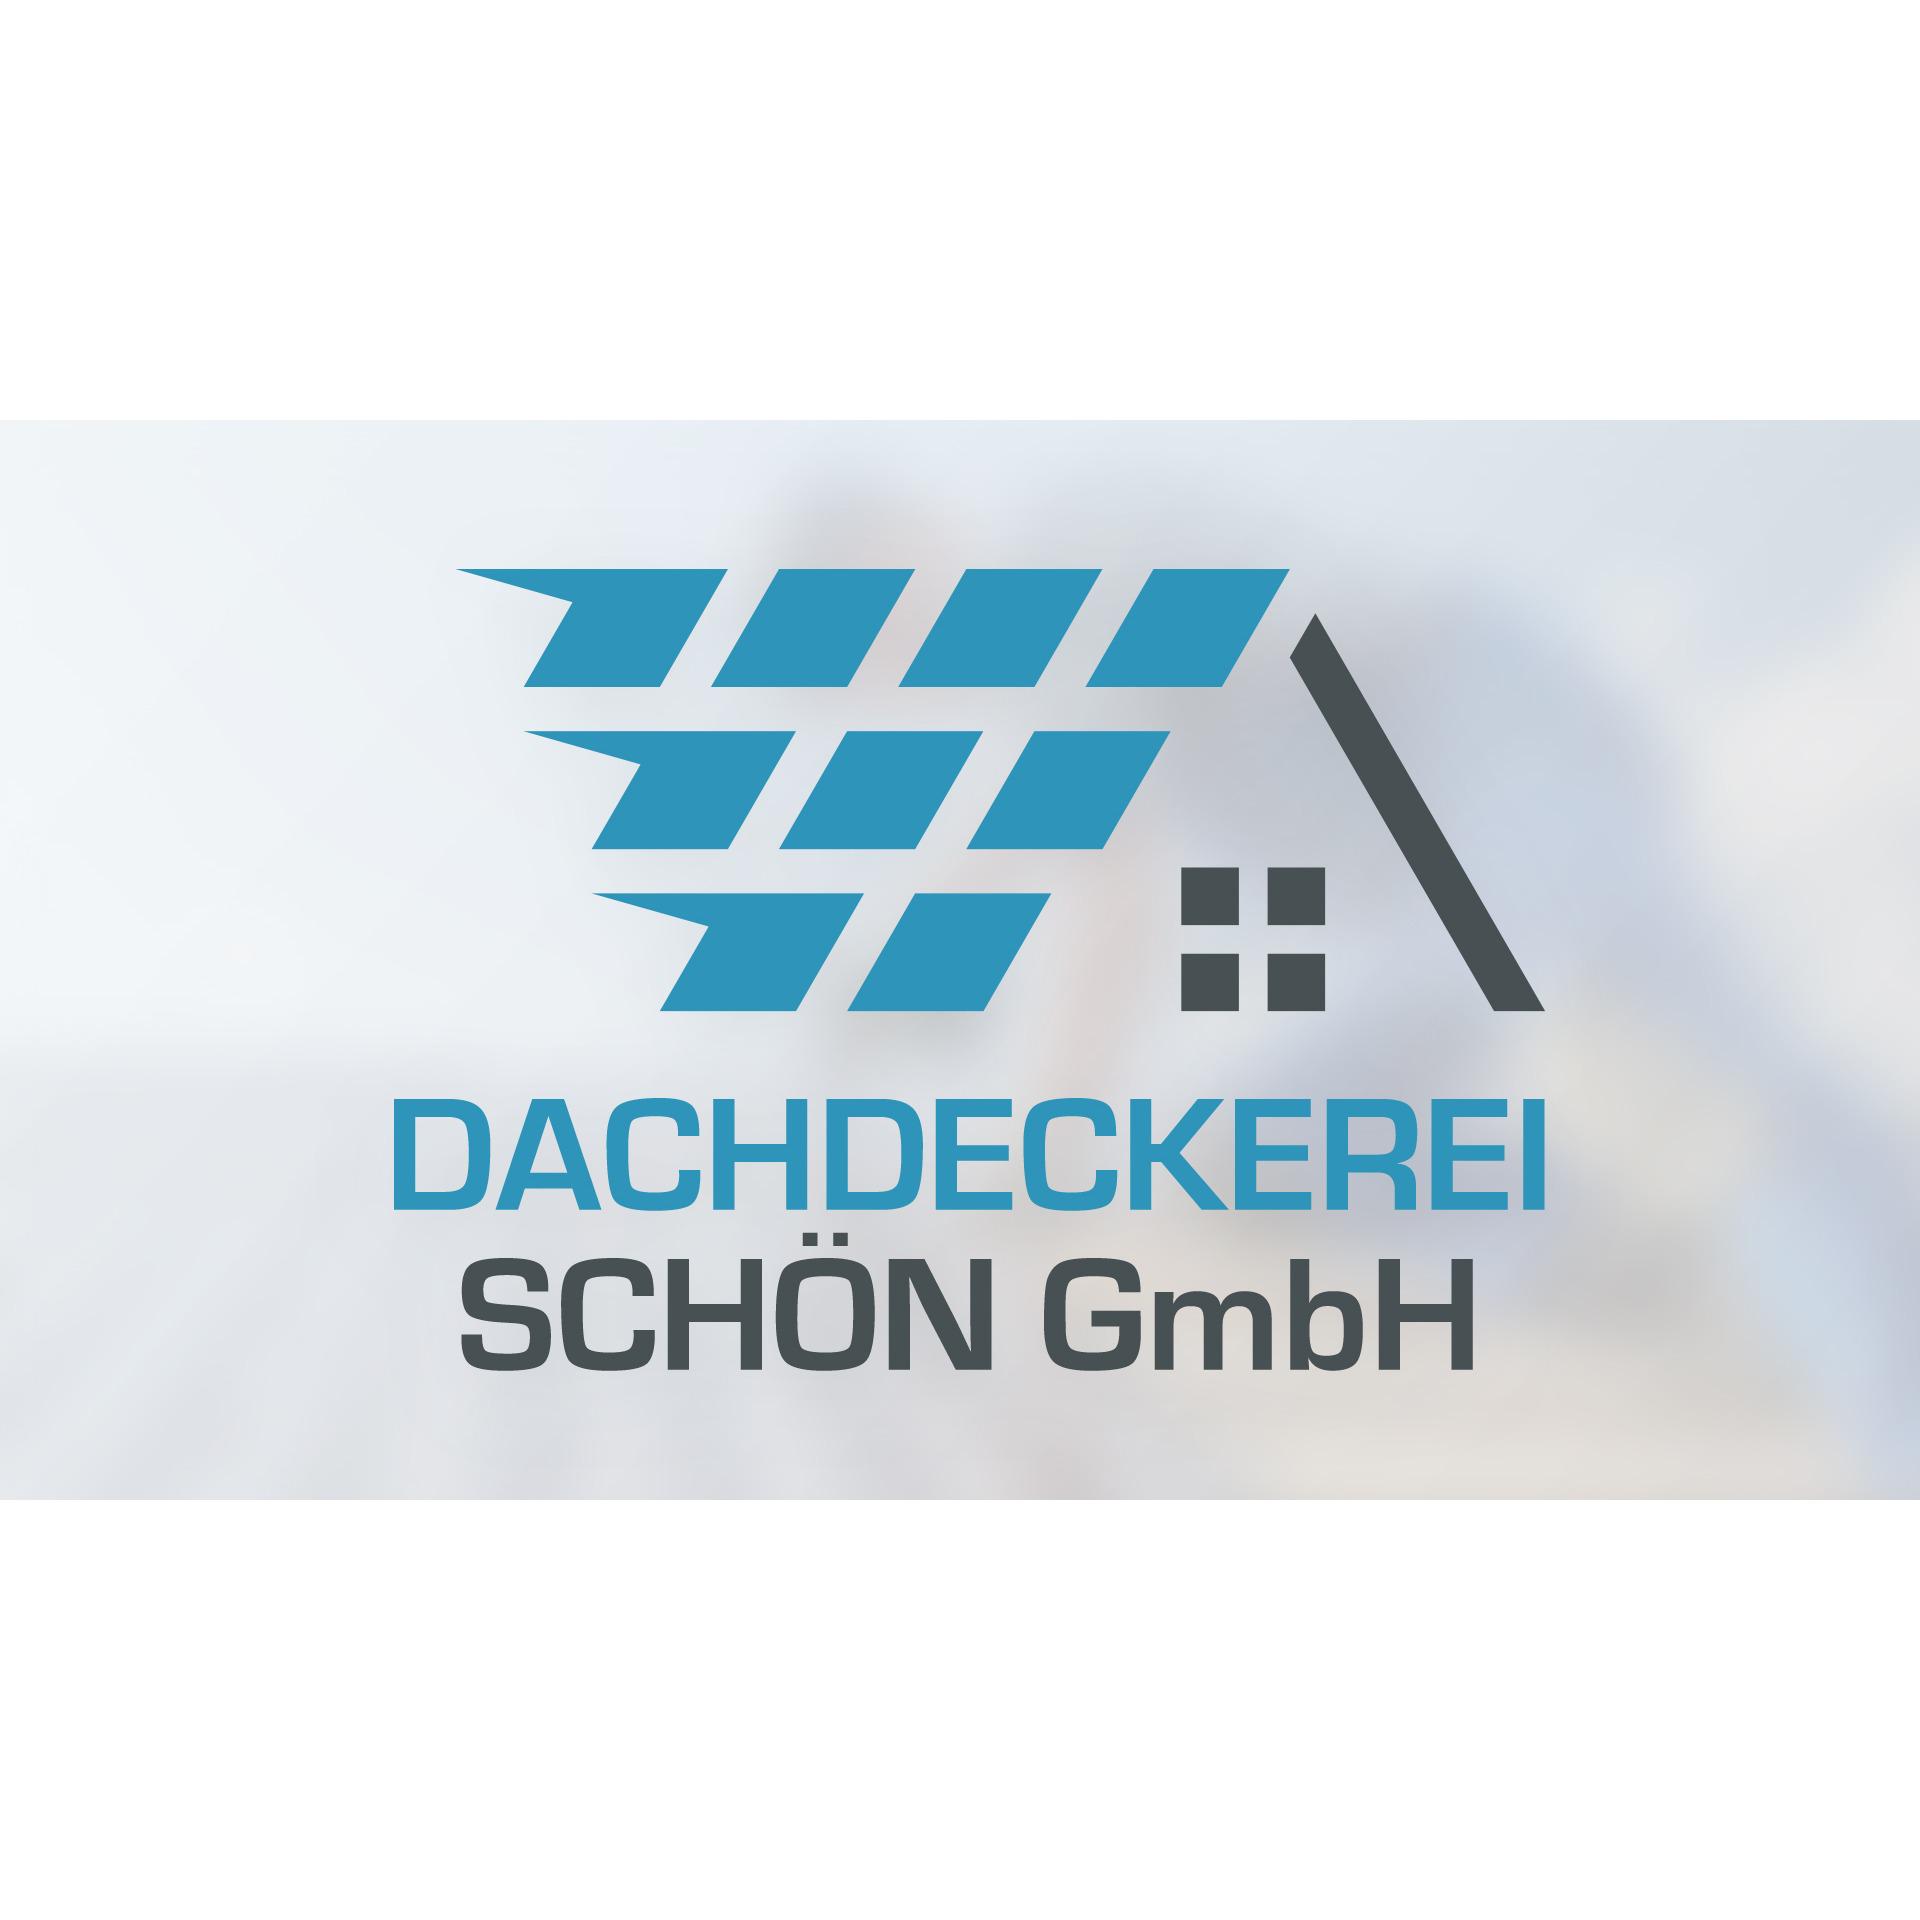 Dachdeckerei Schön GmbH in München - Logo